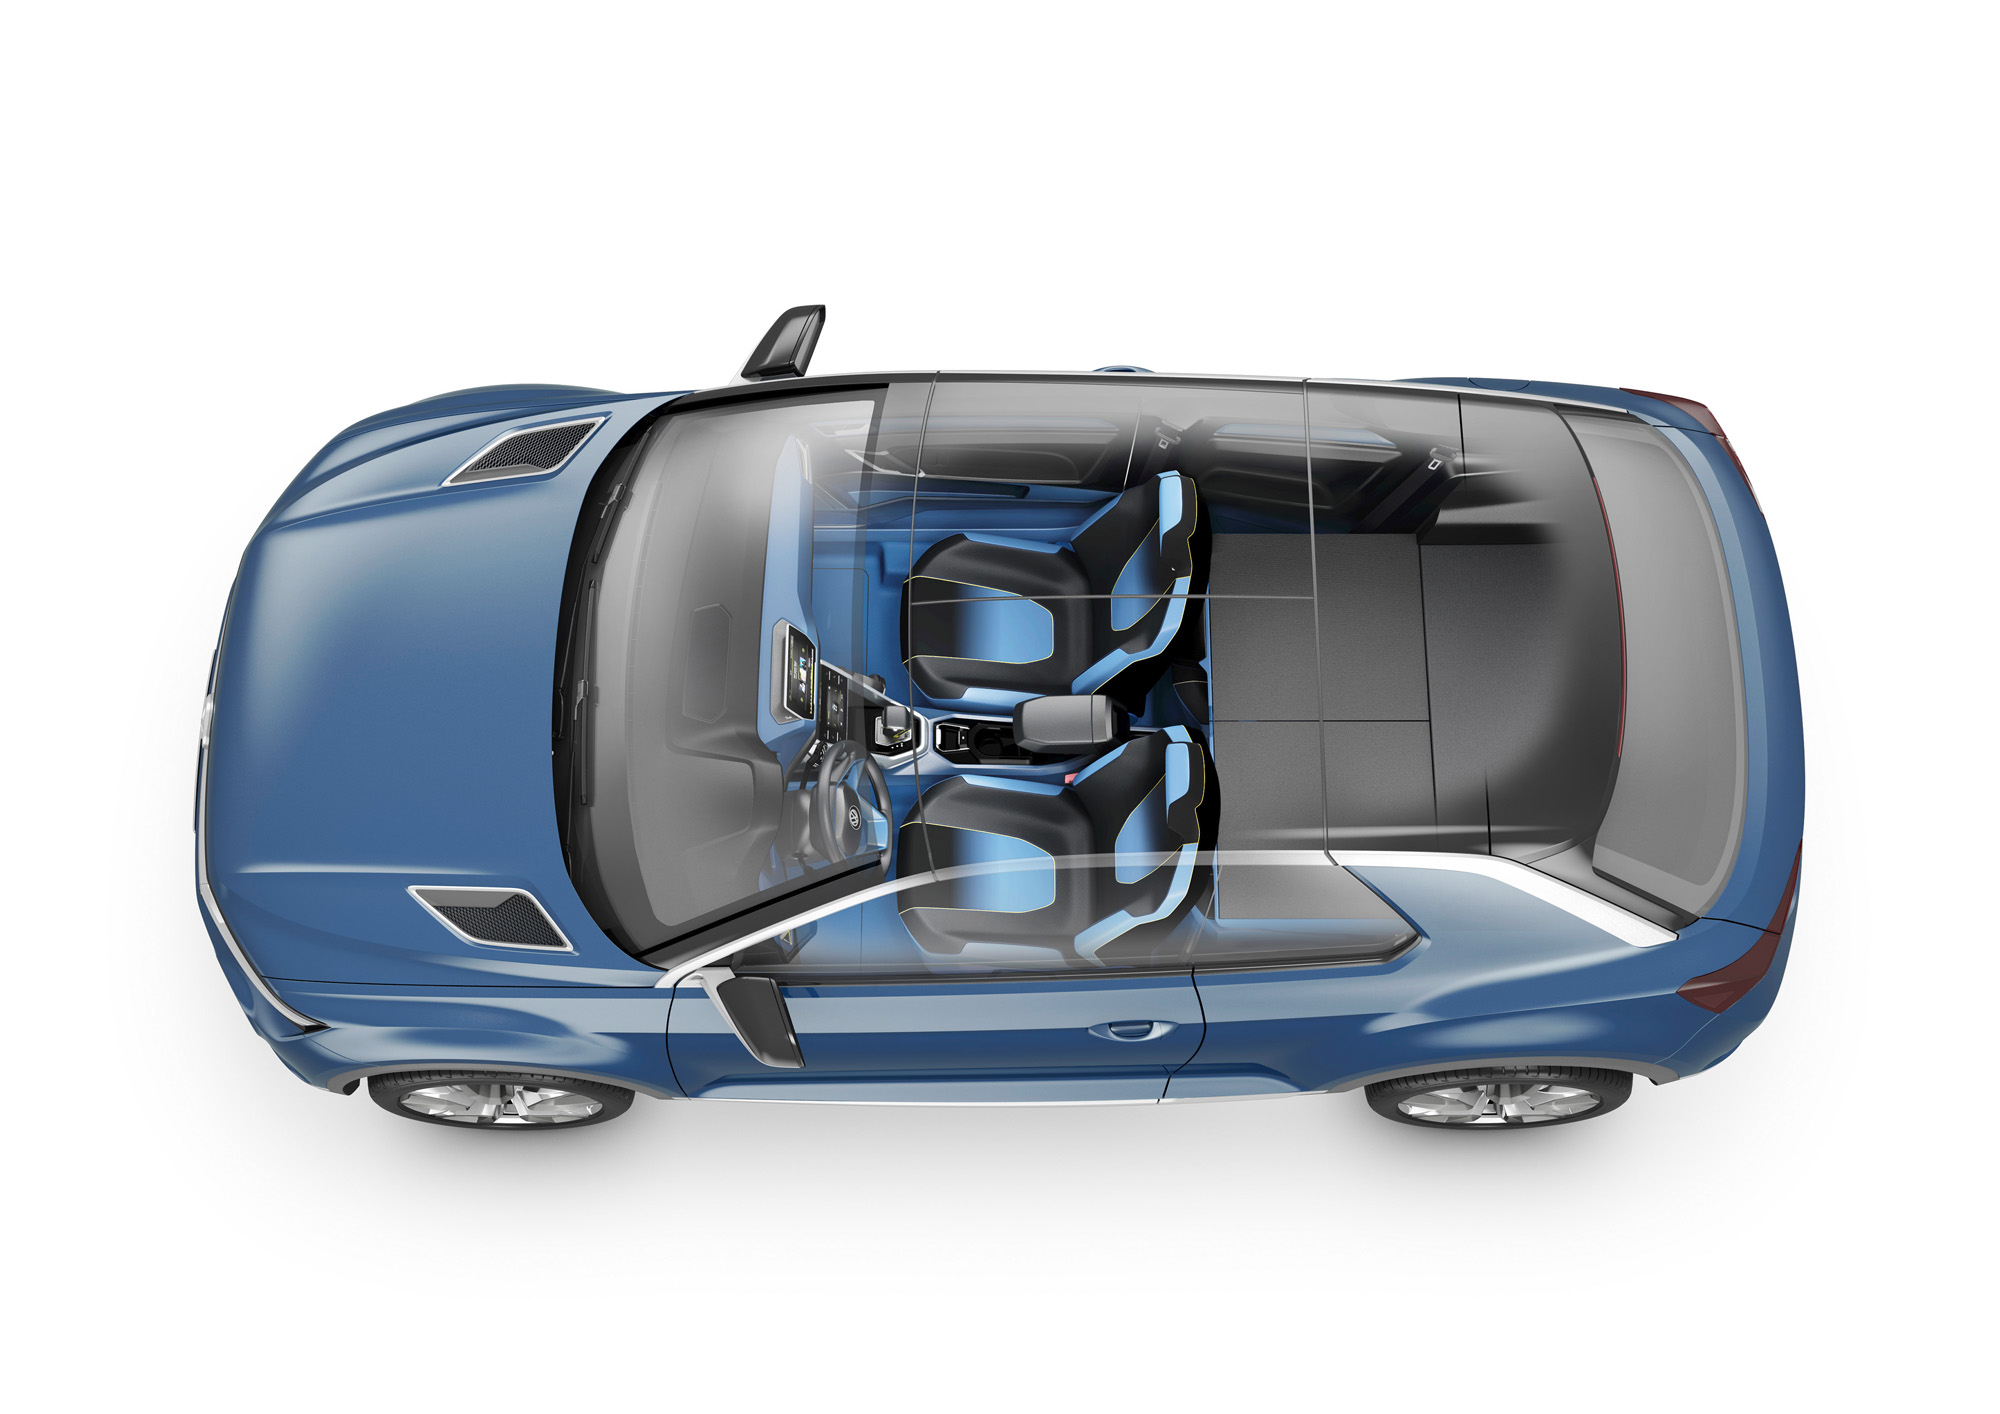 Die neue Volkswagen SUV-Studie T-ROC